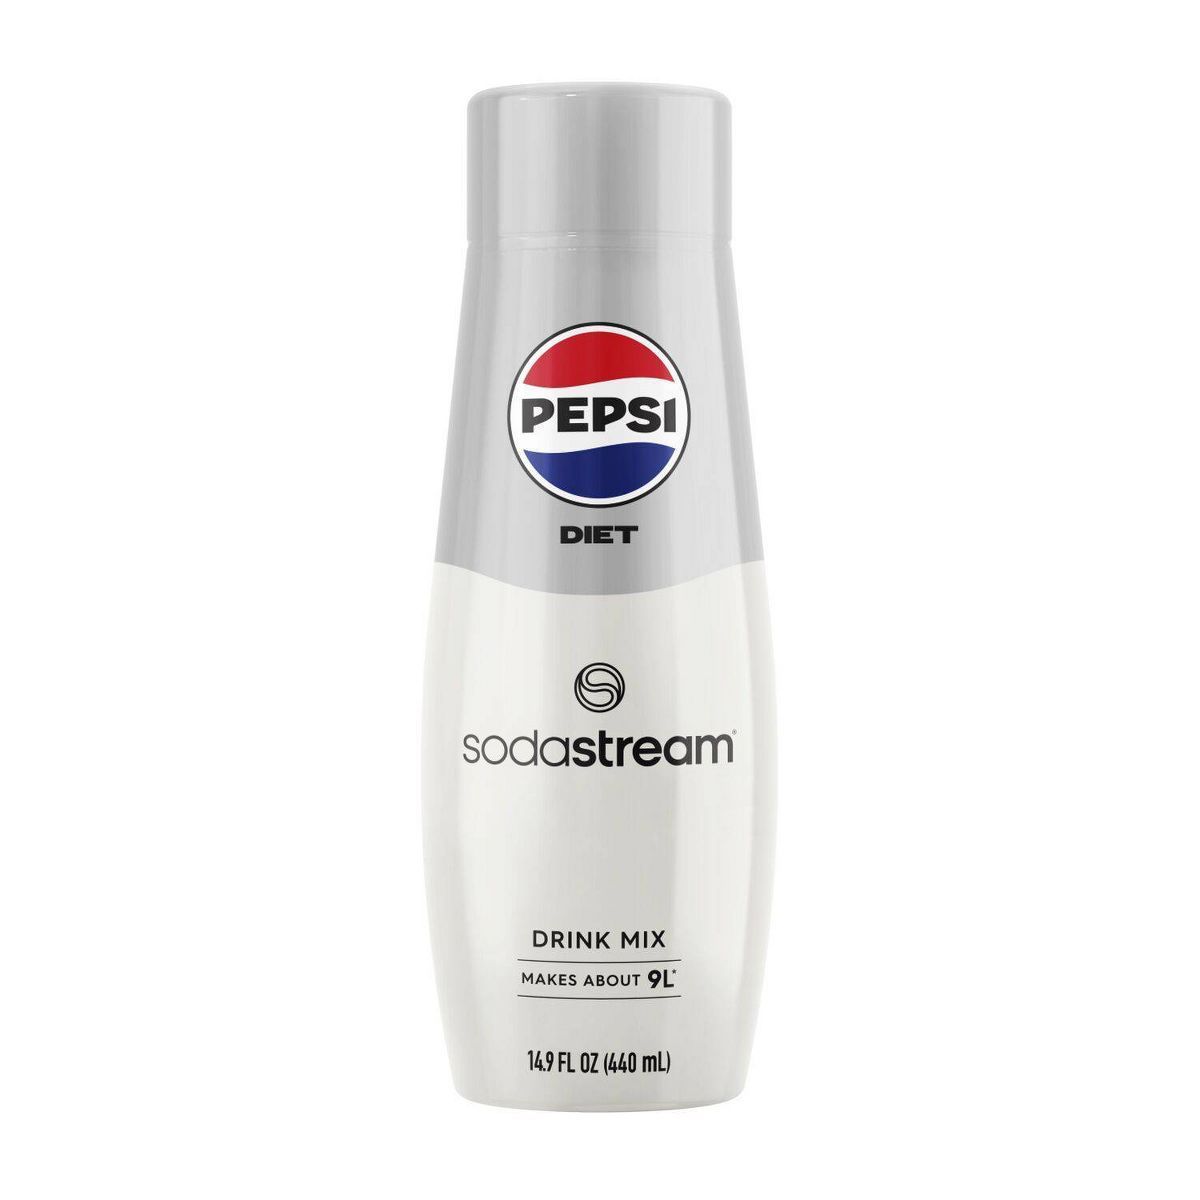 SodaStream Diet Pepsi Soda Mix - 440ml | Target